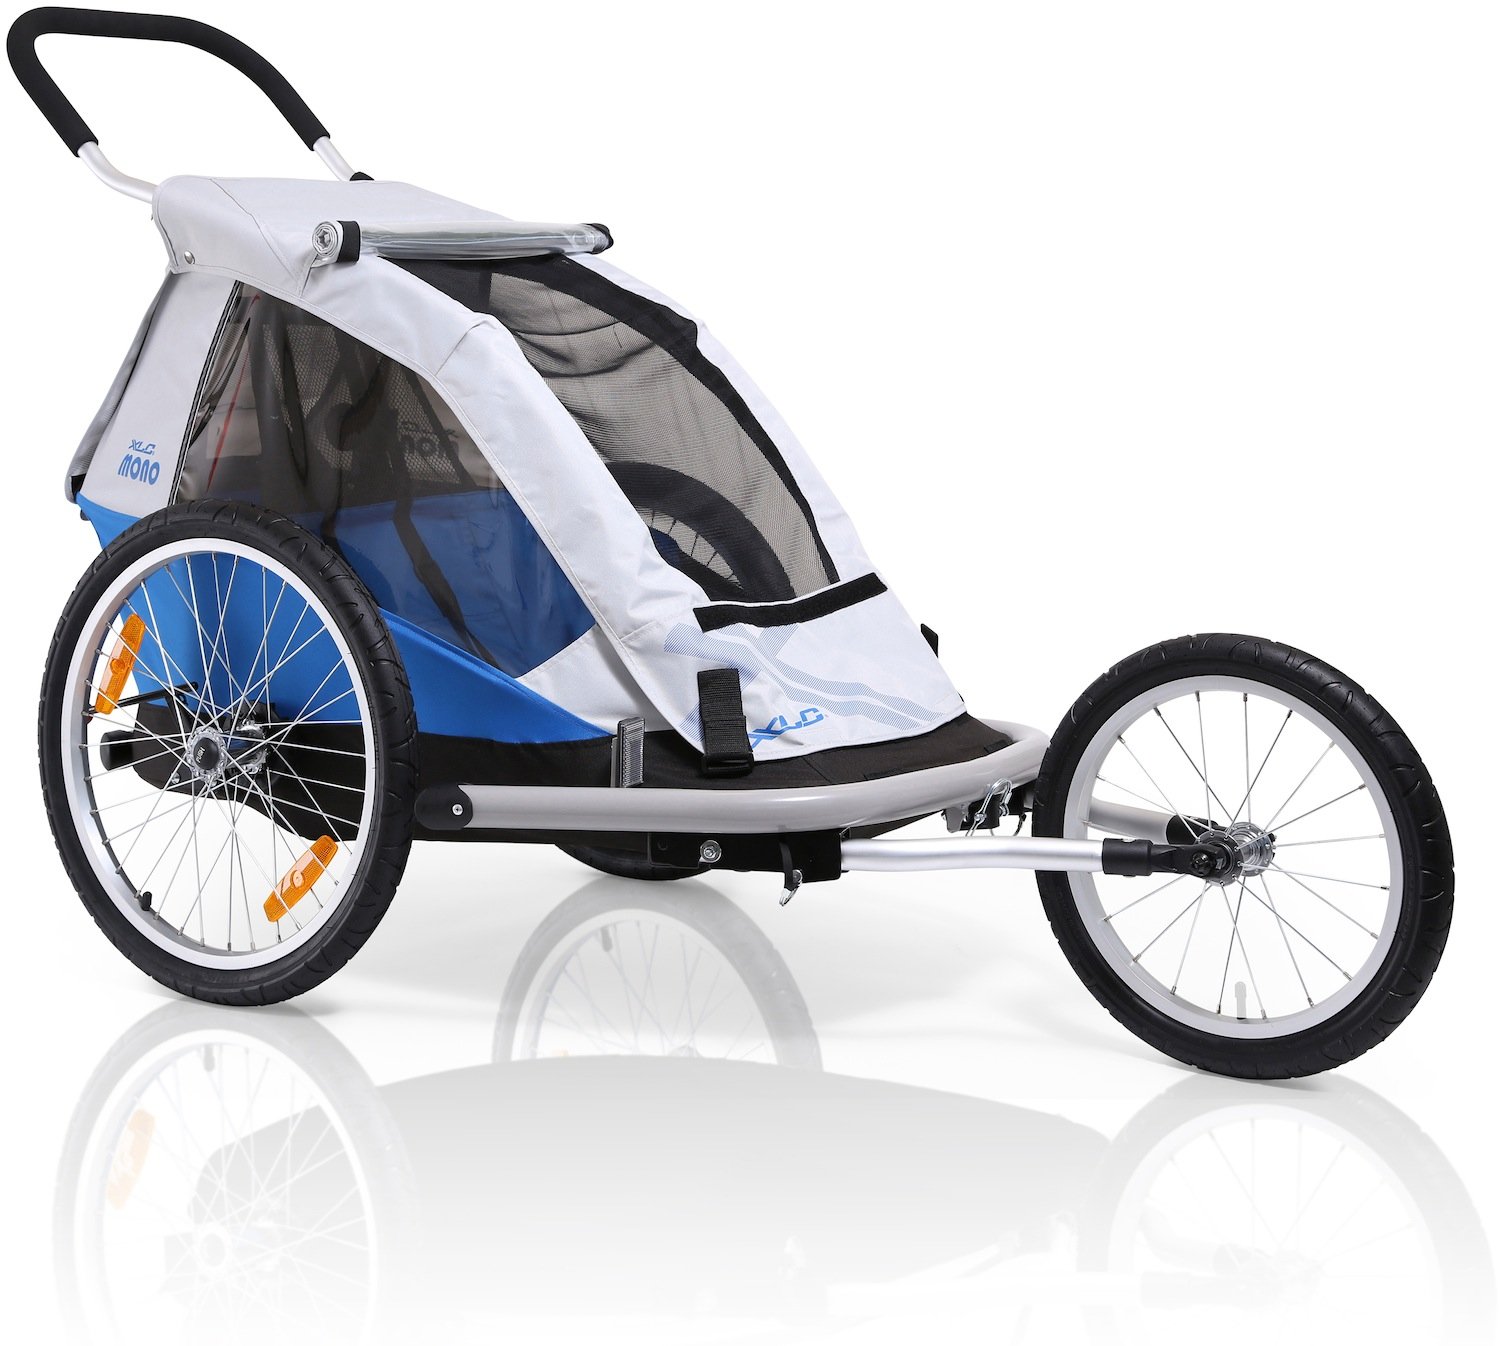 News – XLC Anhänger / Winora Group: Anhänger, Buggy und Walker – Allrounder zum Transport von Kind und Kegel